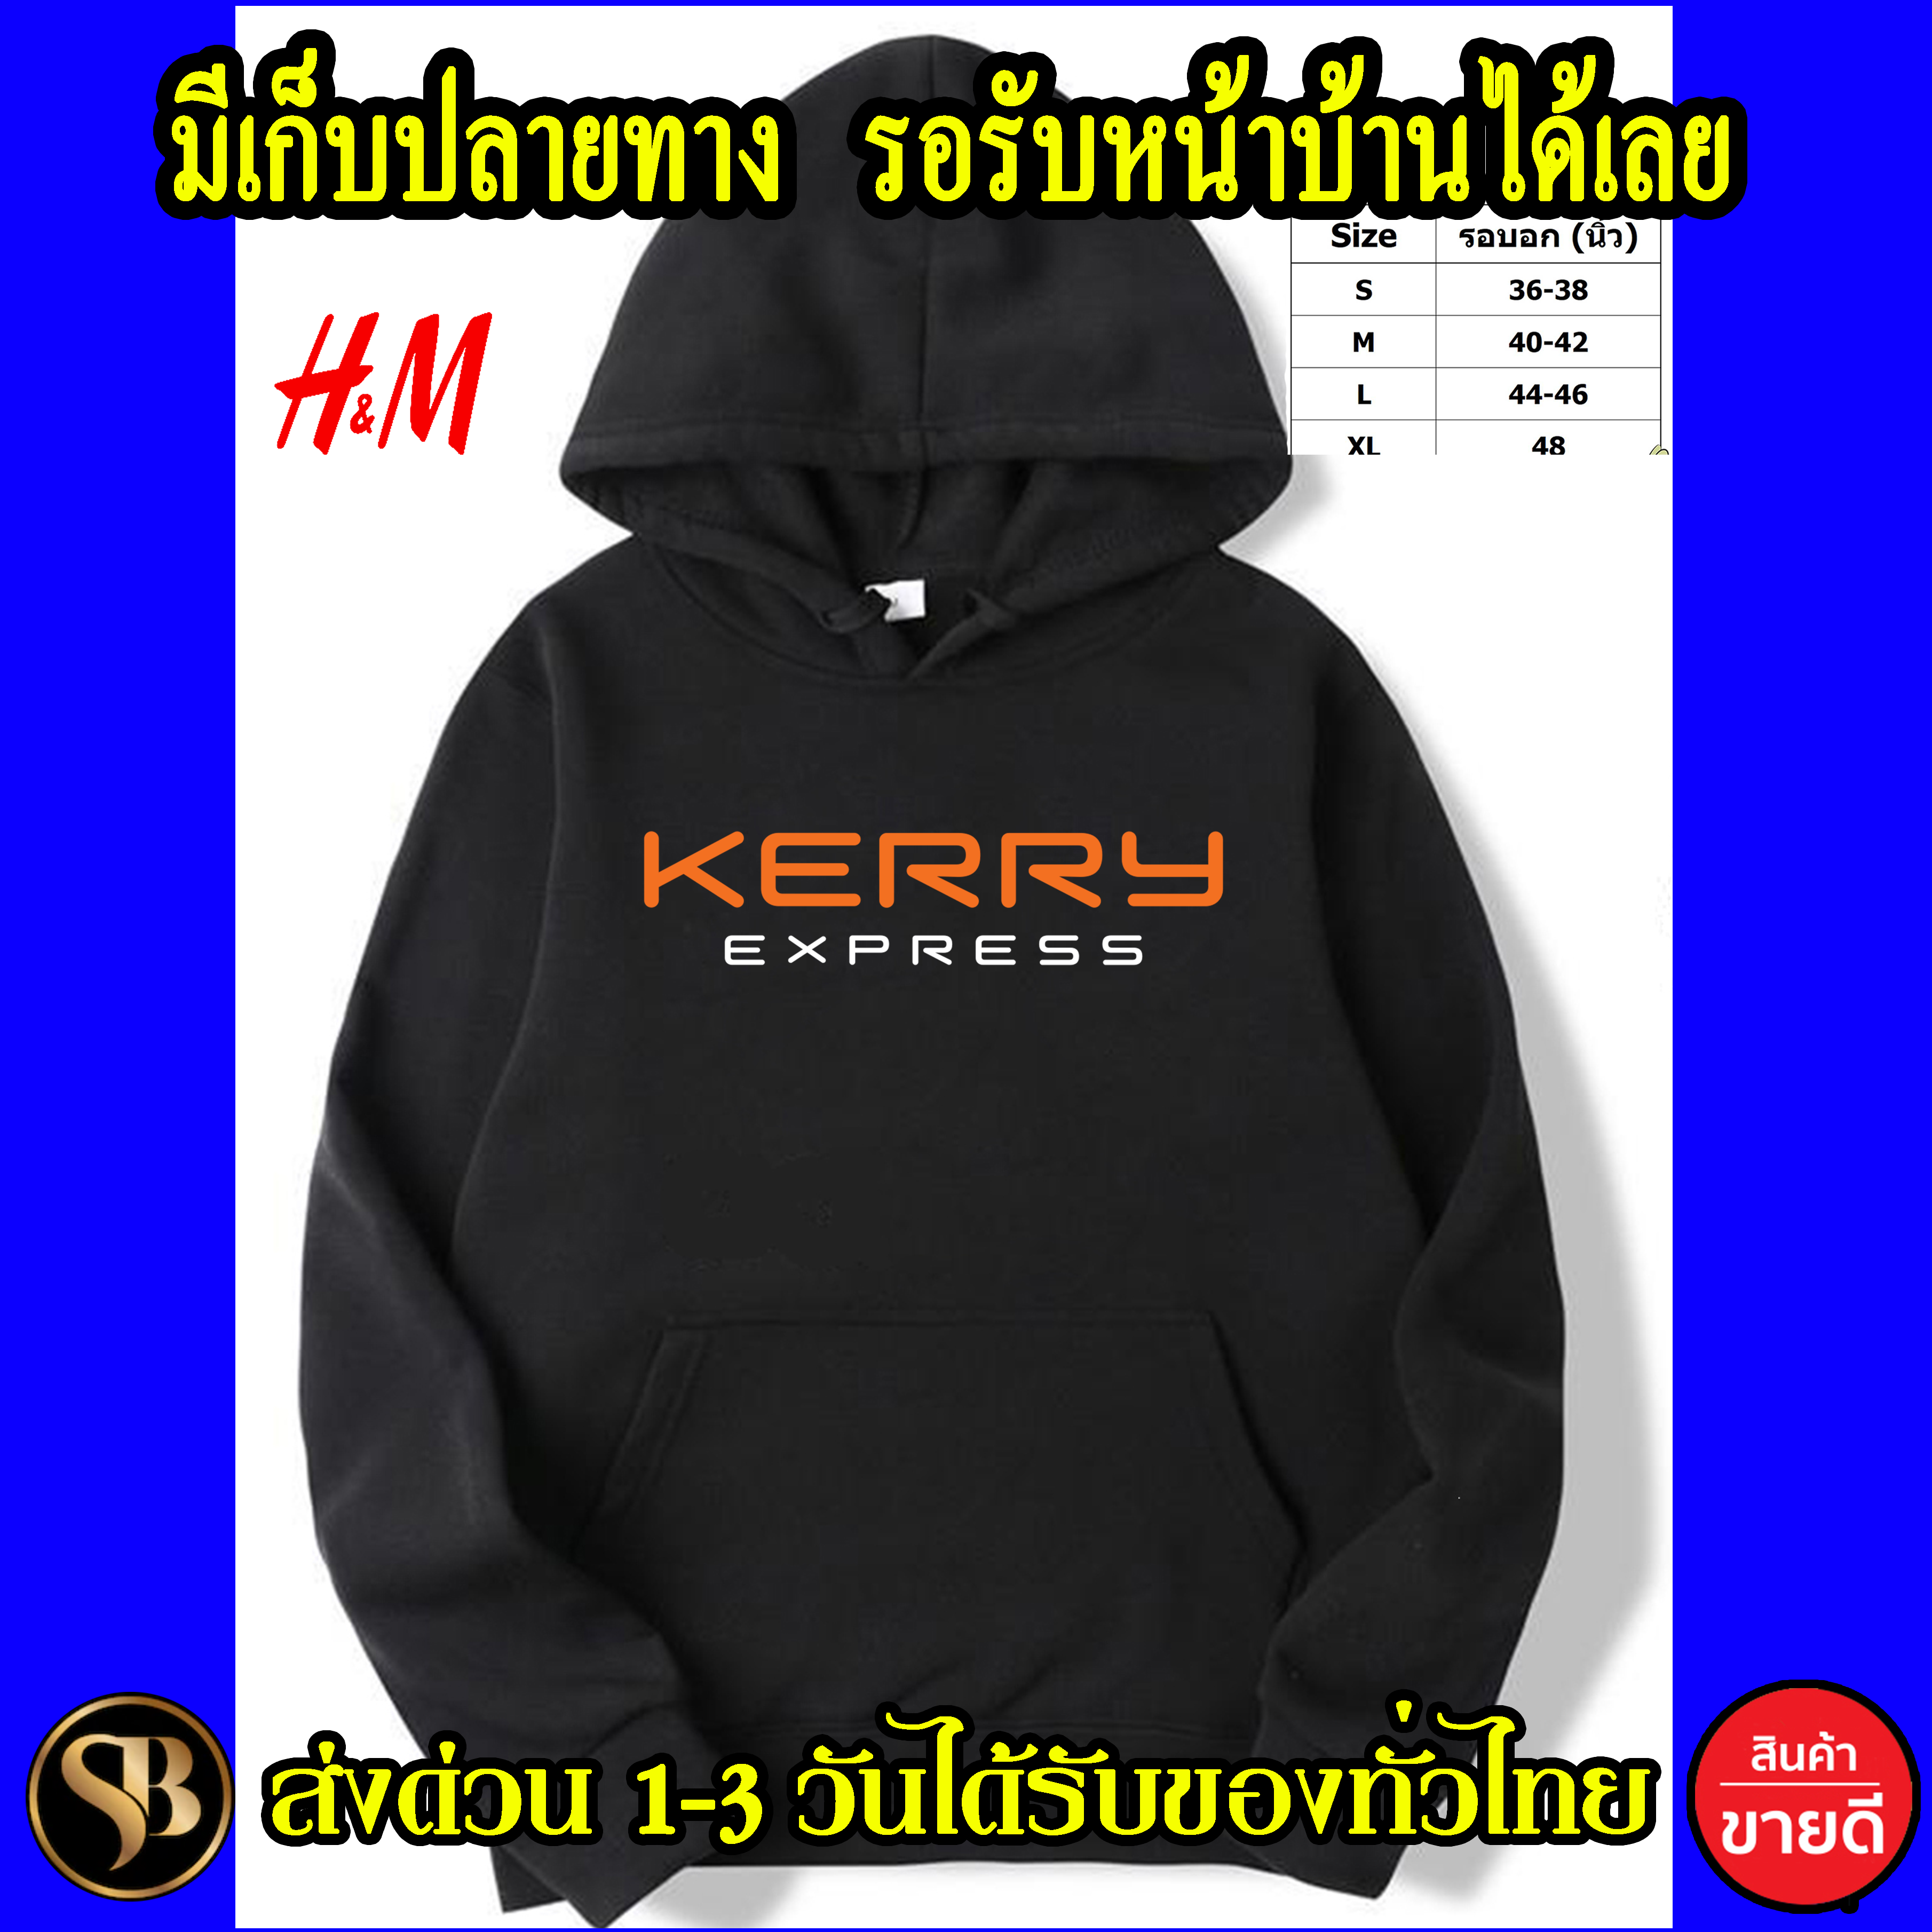 KERRY เสื้อฮู้ด Kerry เคอรี่ เสื้อกันหนาว งาน H&M โลโก้สีสด HOODIE แบบสวม ซิป สกรีนแบบเฟล็ก PU สวยสดไม่แตกไม่ลอก ส่งด่วนทั่วไทย